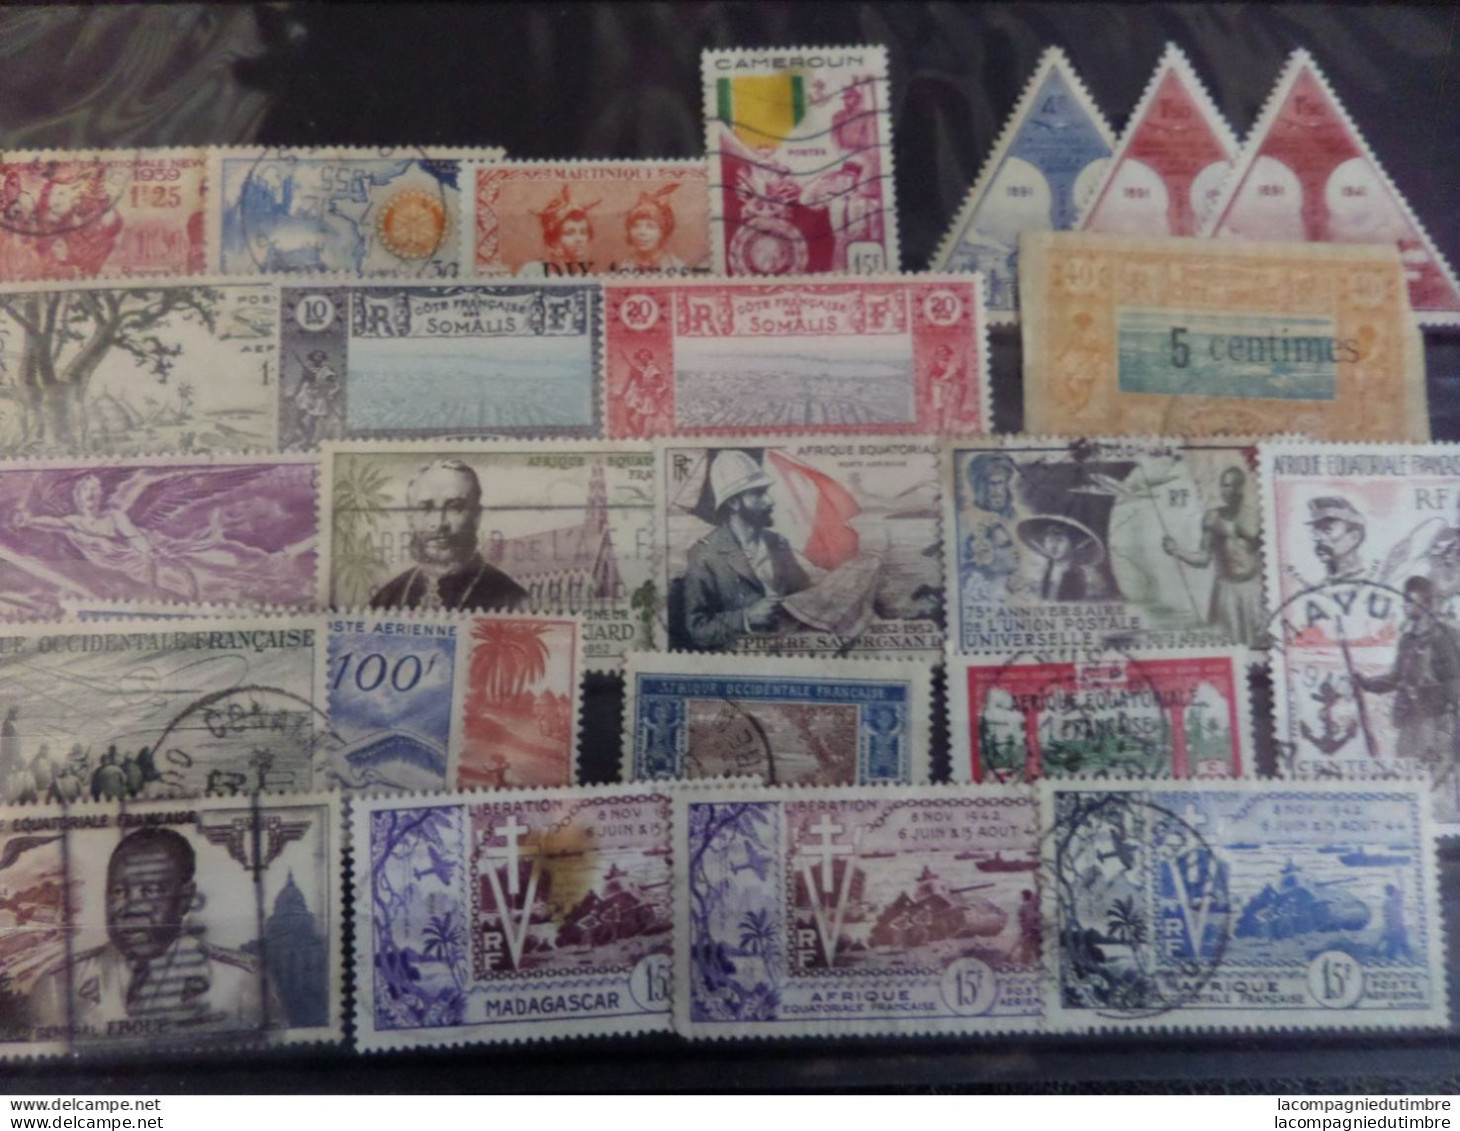 Vrac de plusieurs centaines de timbres de Colonies Françaises avant Indépendance **/*/obl. Très forte cote! TB